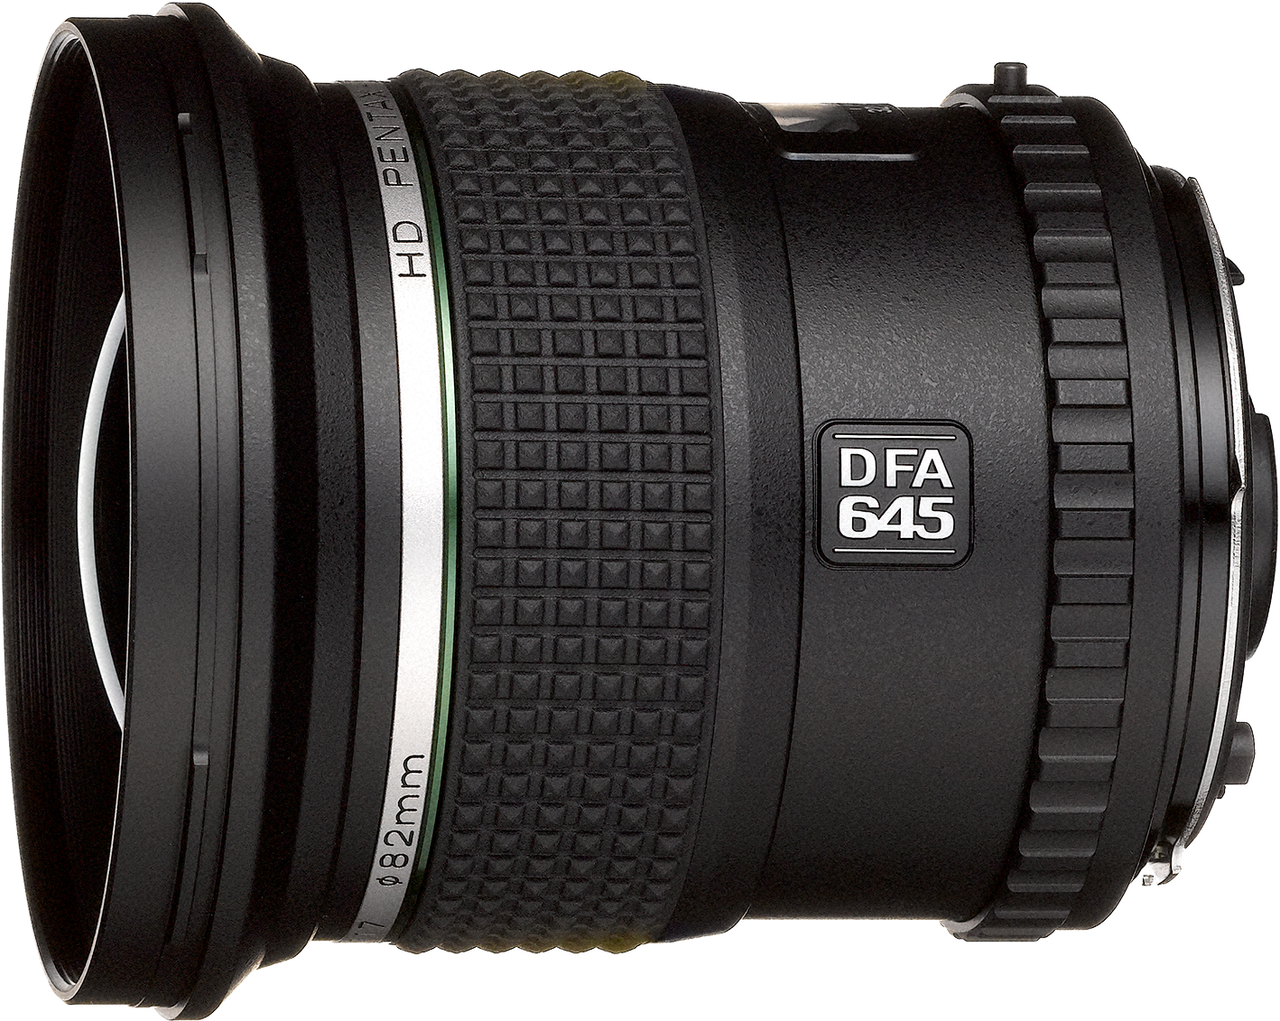 HD Pentax-D FA645 35mm F3.5 AL [IF]